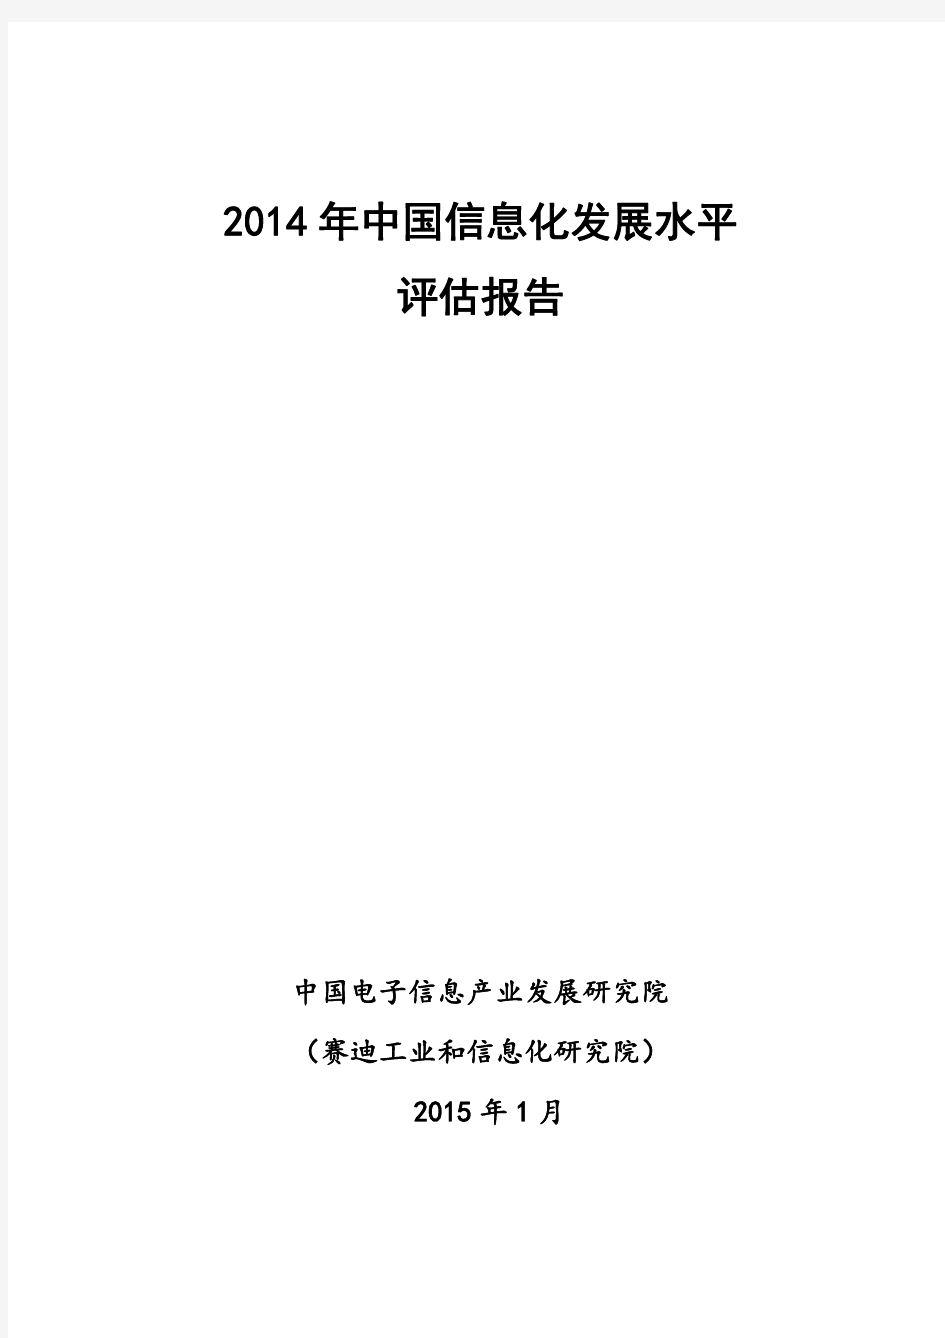 2014年中国信息化发展水平评估报告